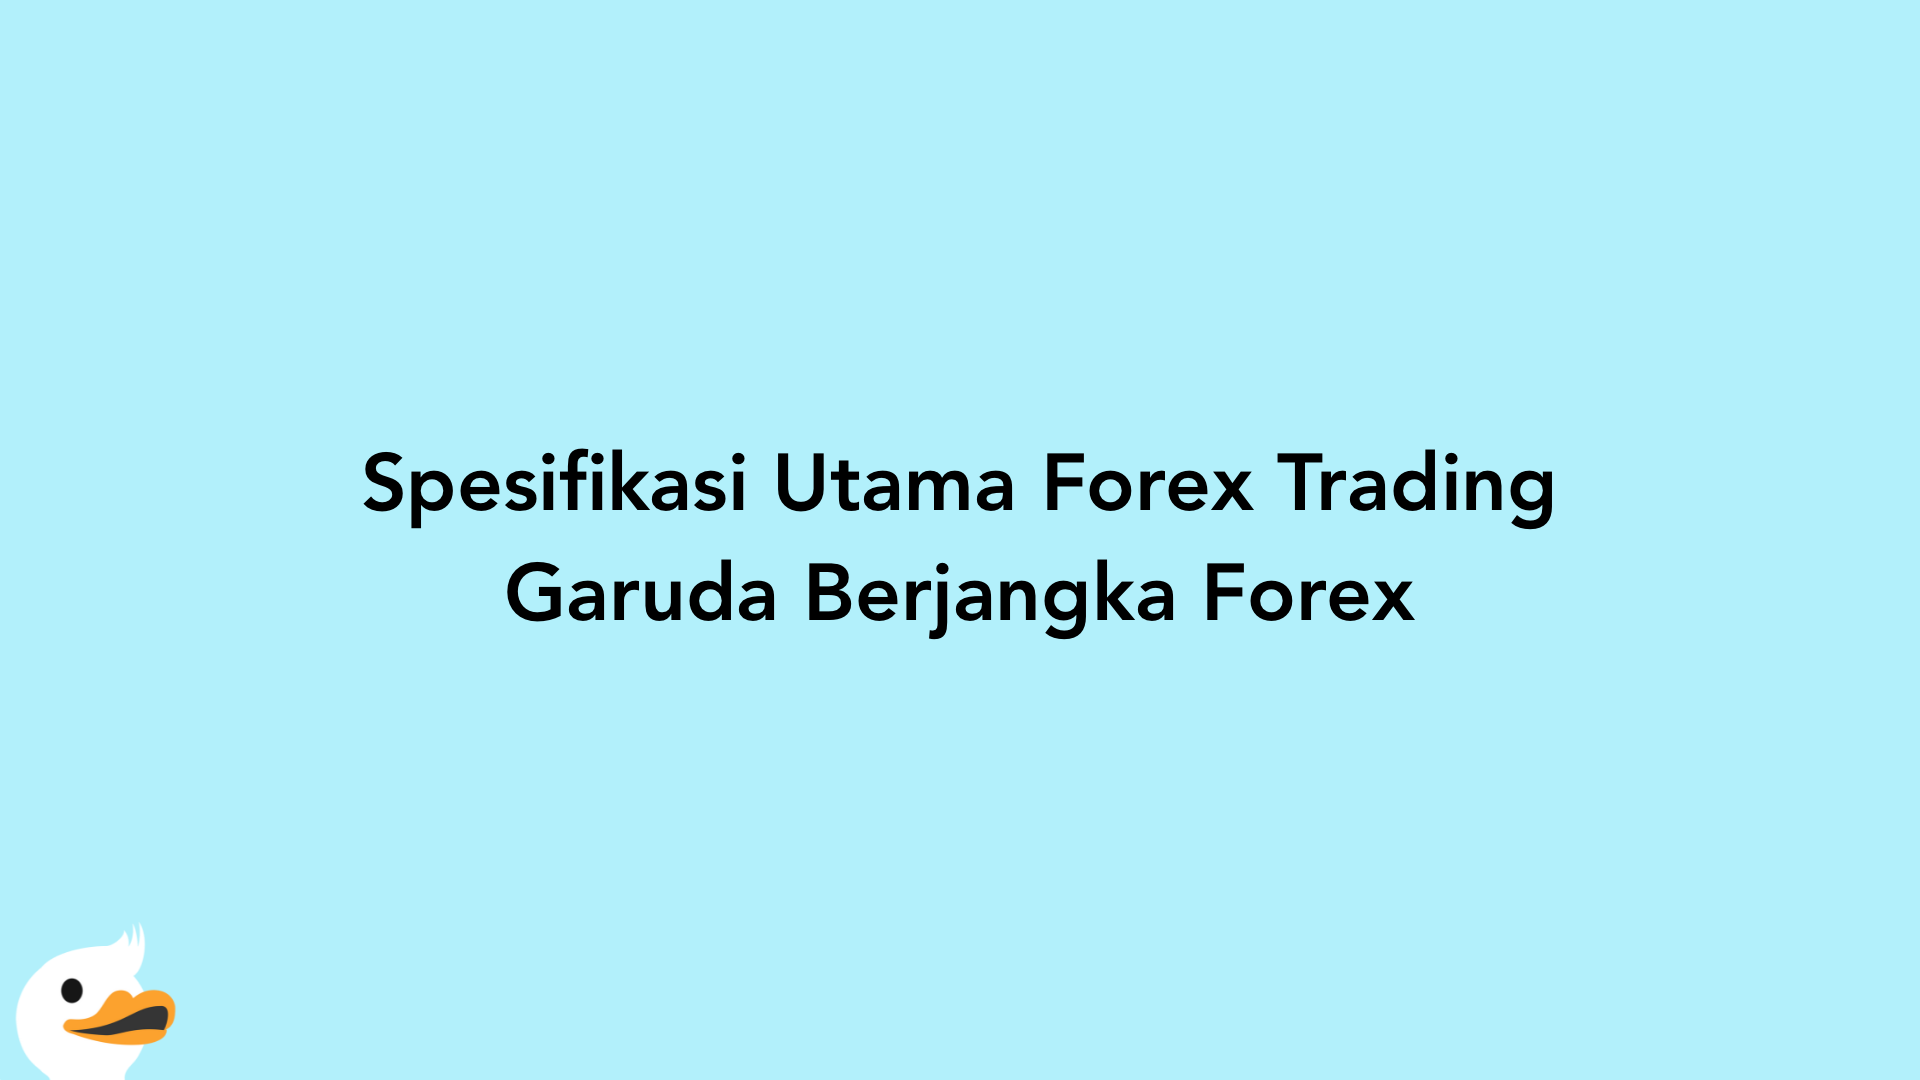 Spesifikasi Utama Forex Trading Garuda Berjangka Forex